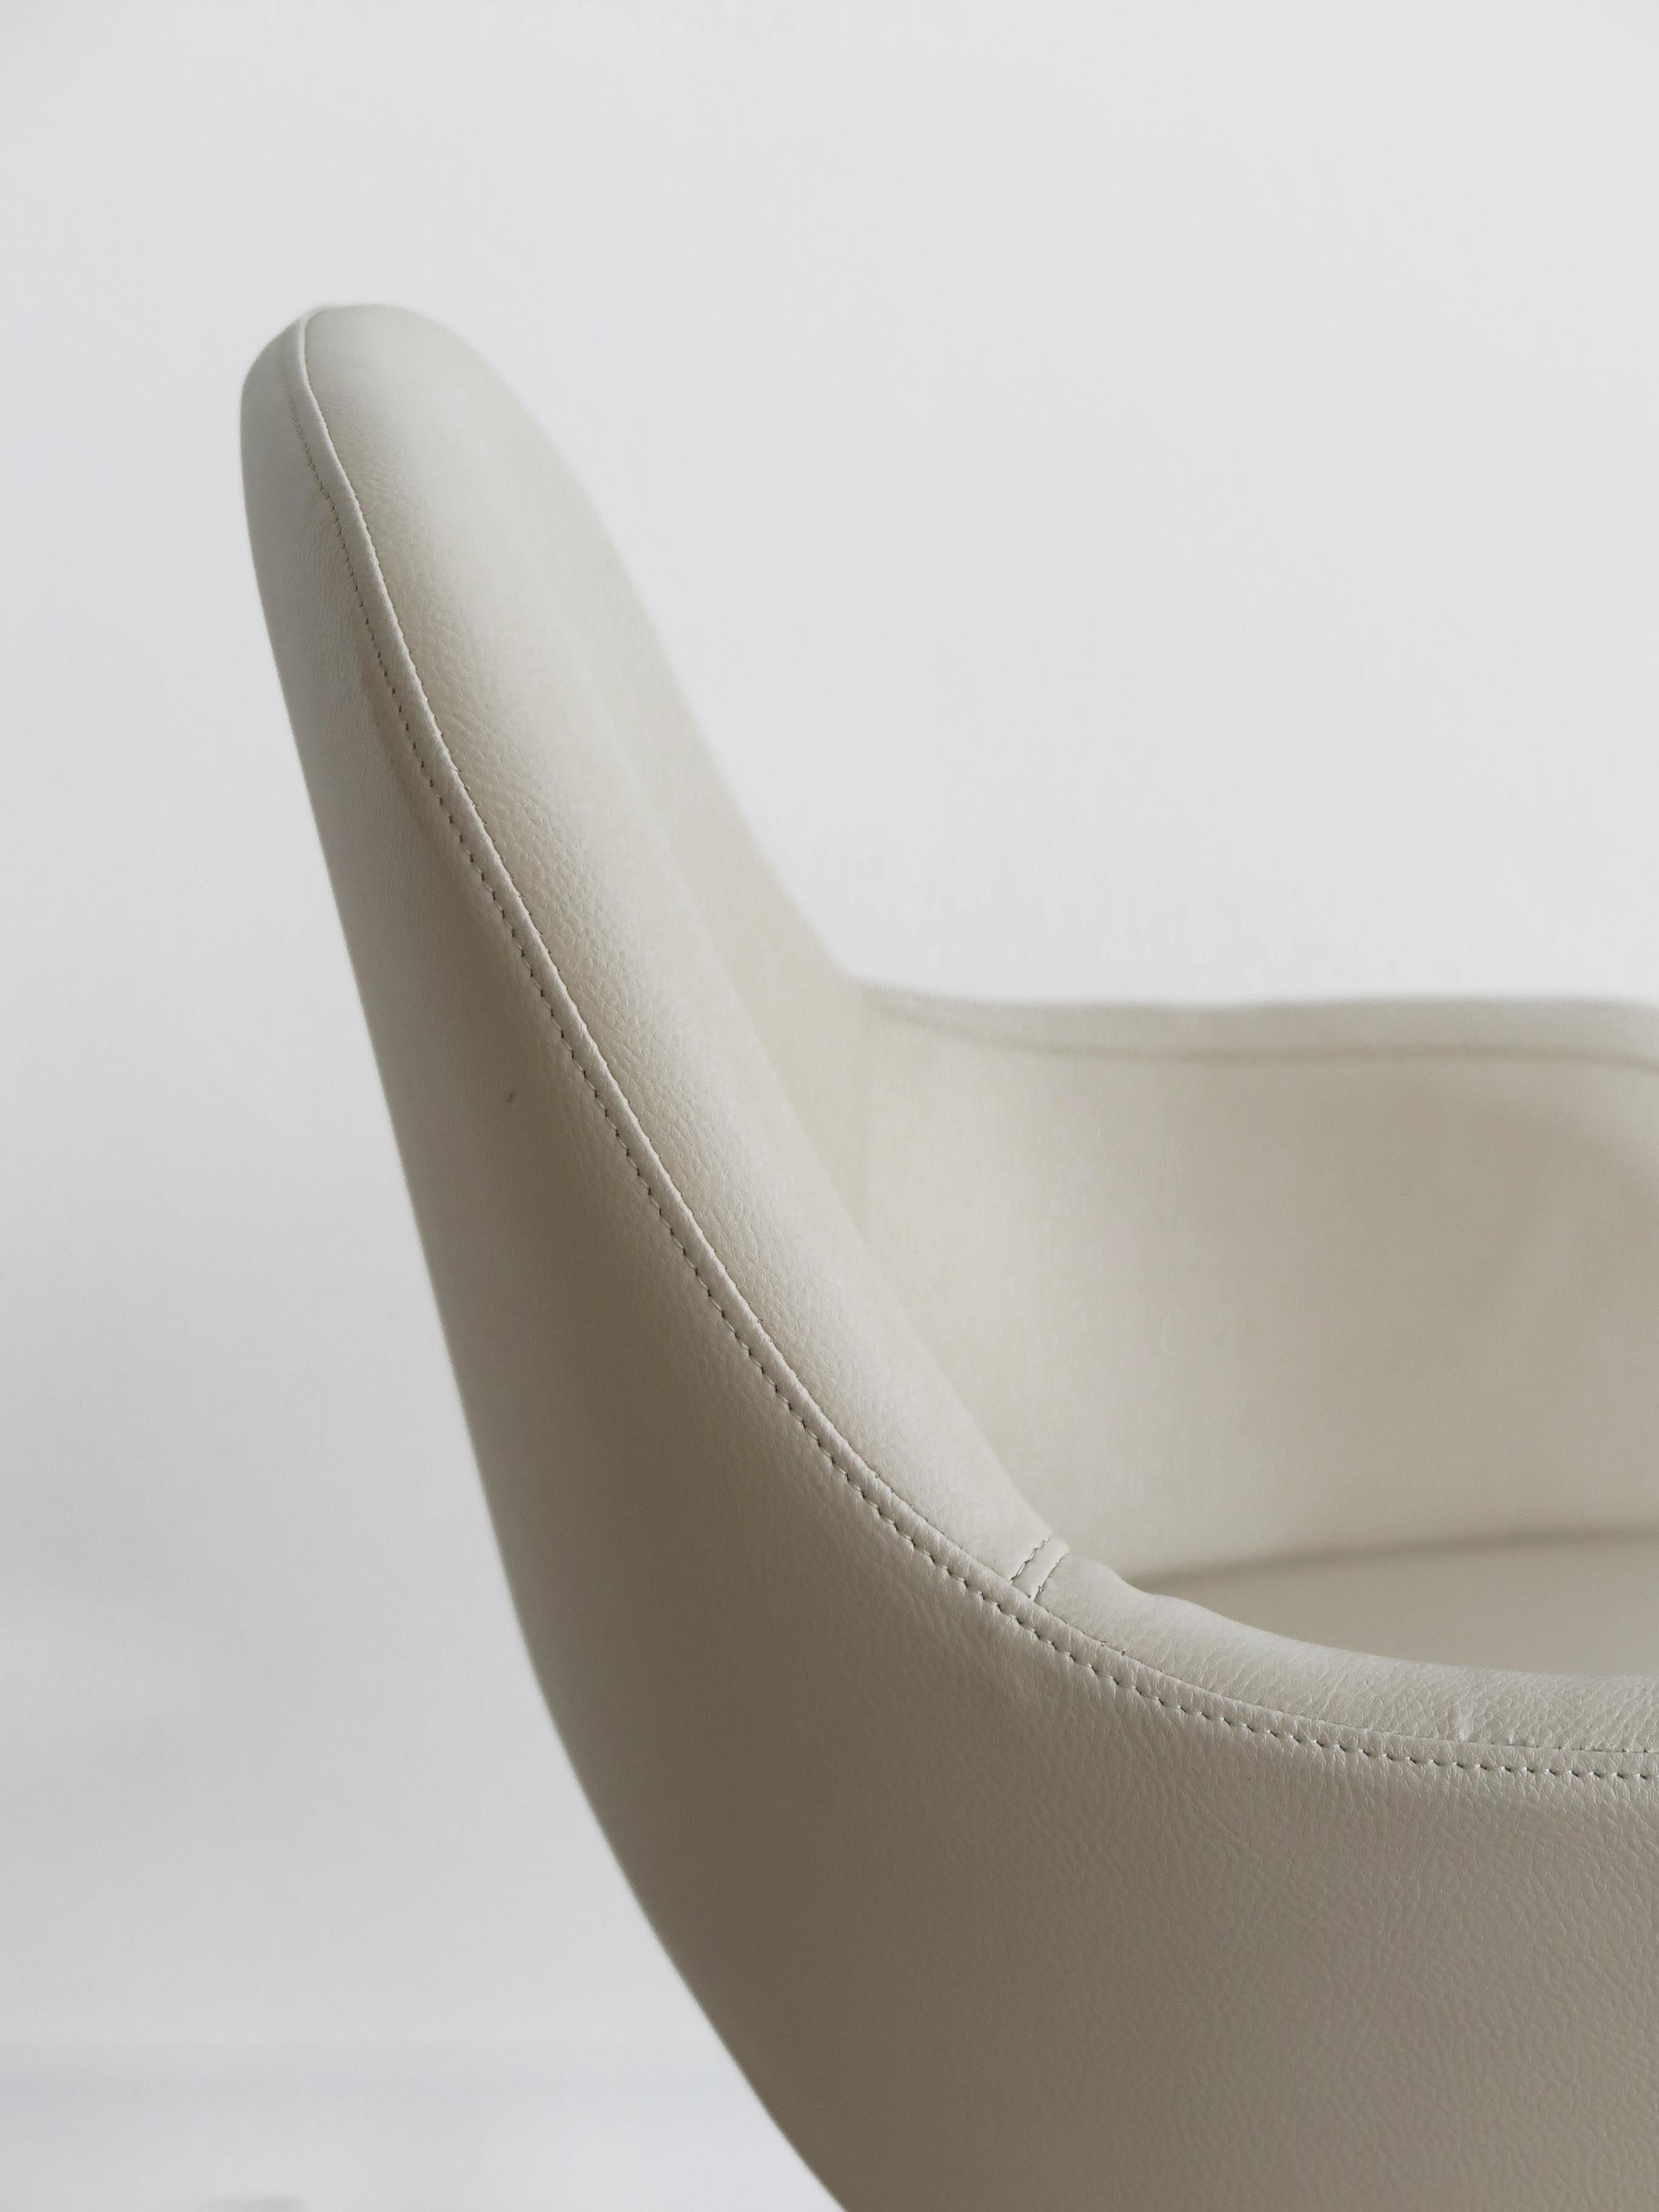 Velca Italian Midcentrury Swivel Office Chair Armchair 1960s For Sale 4